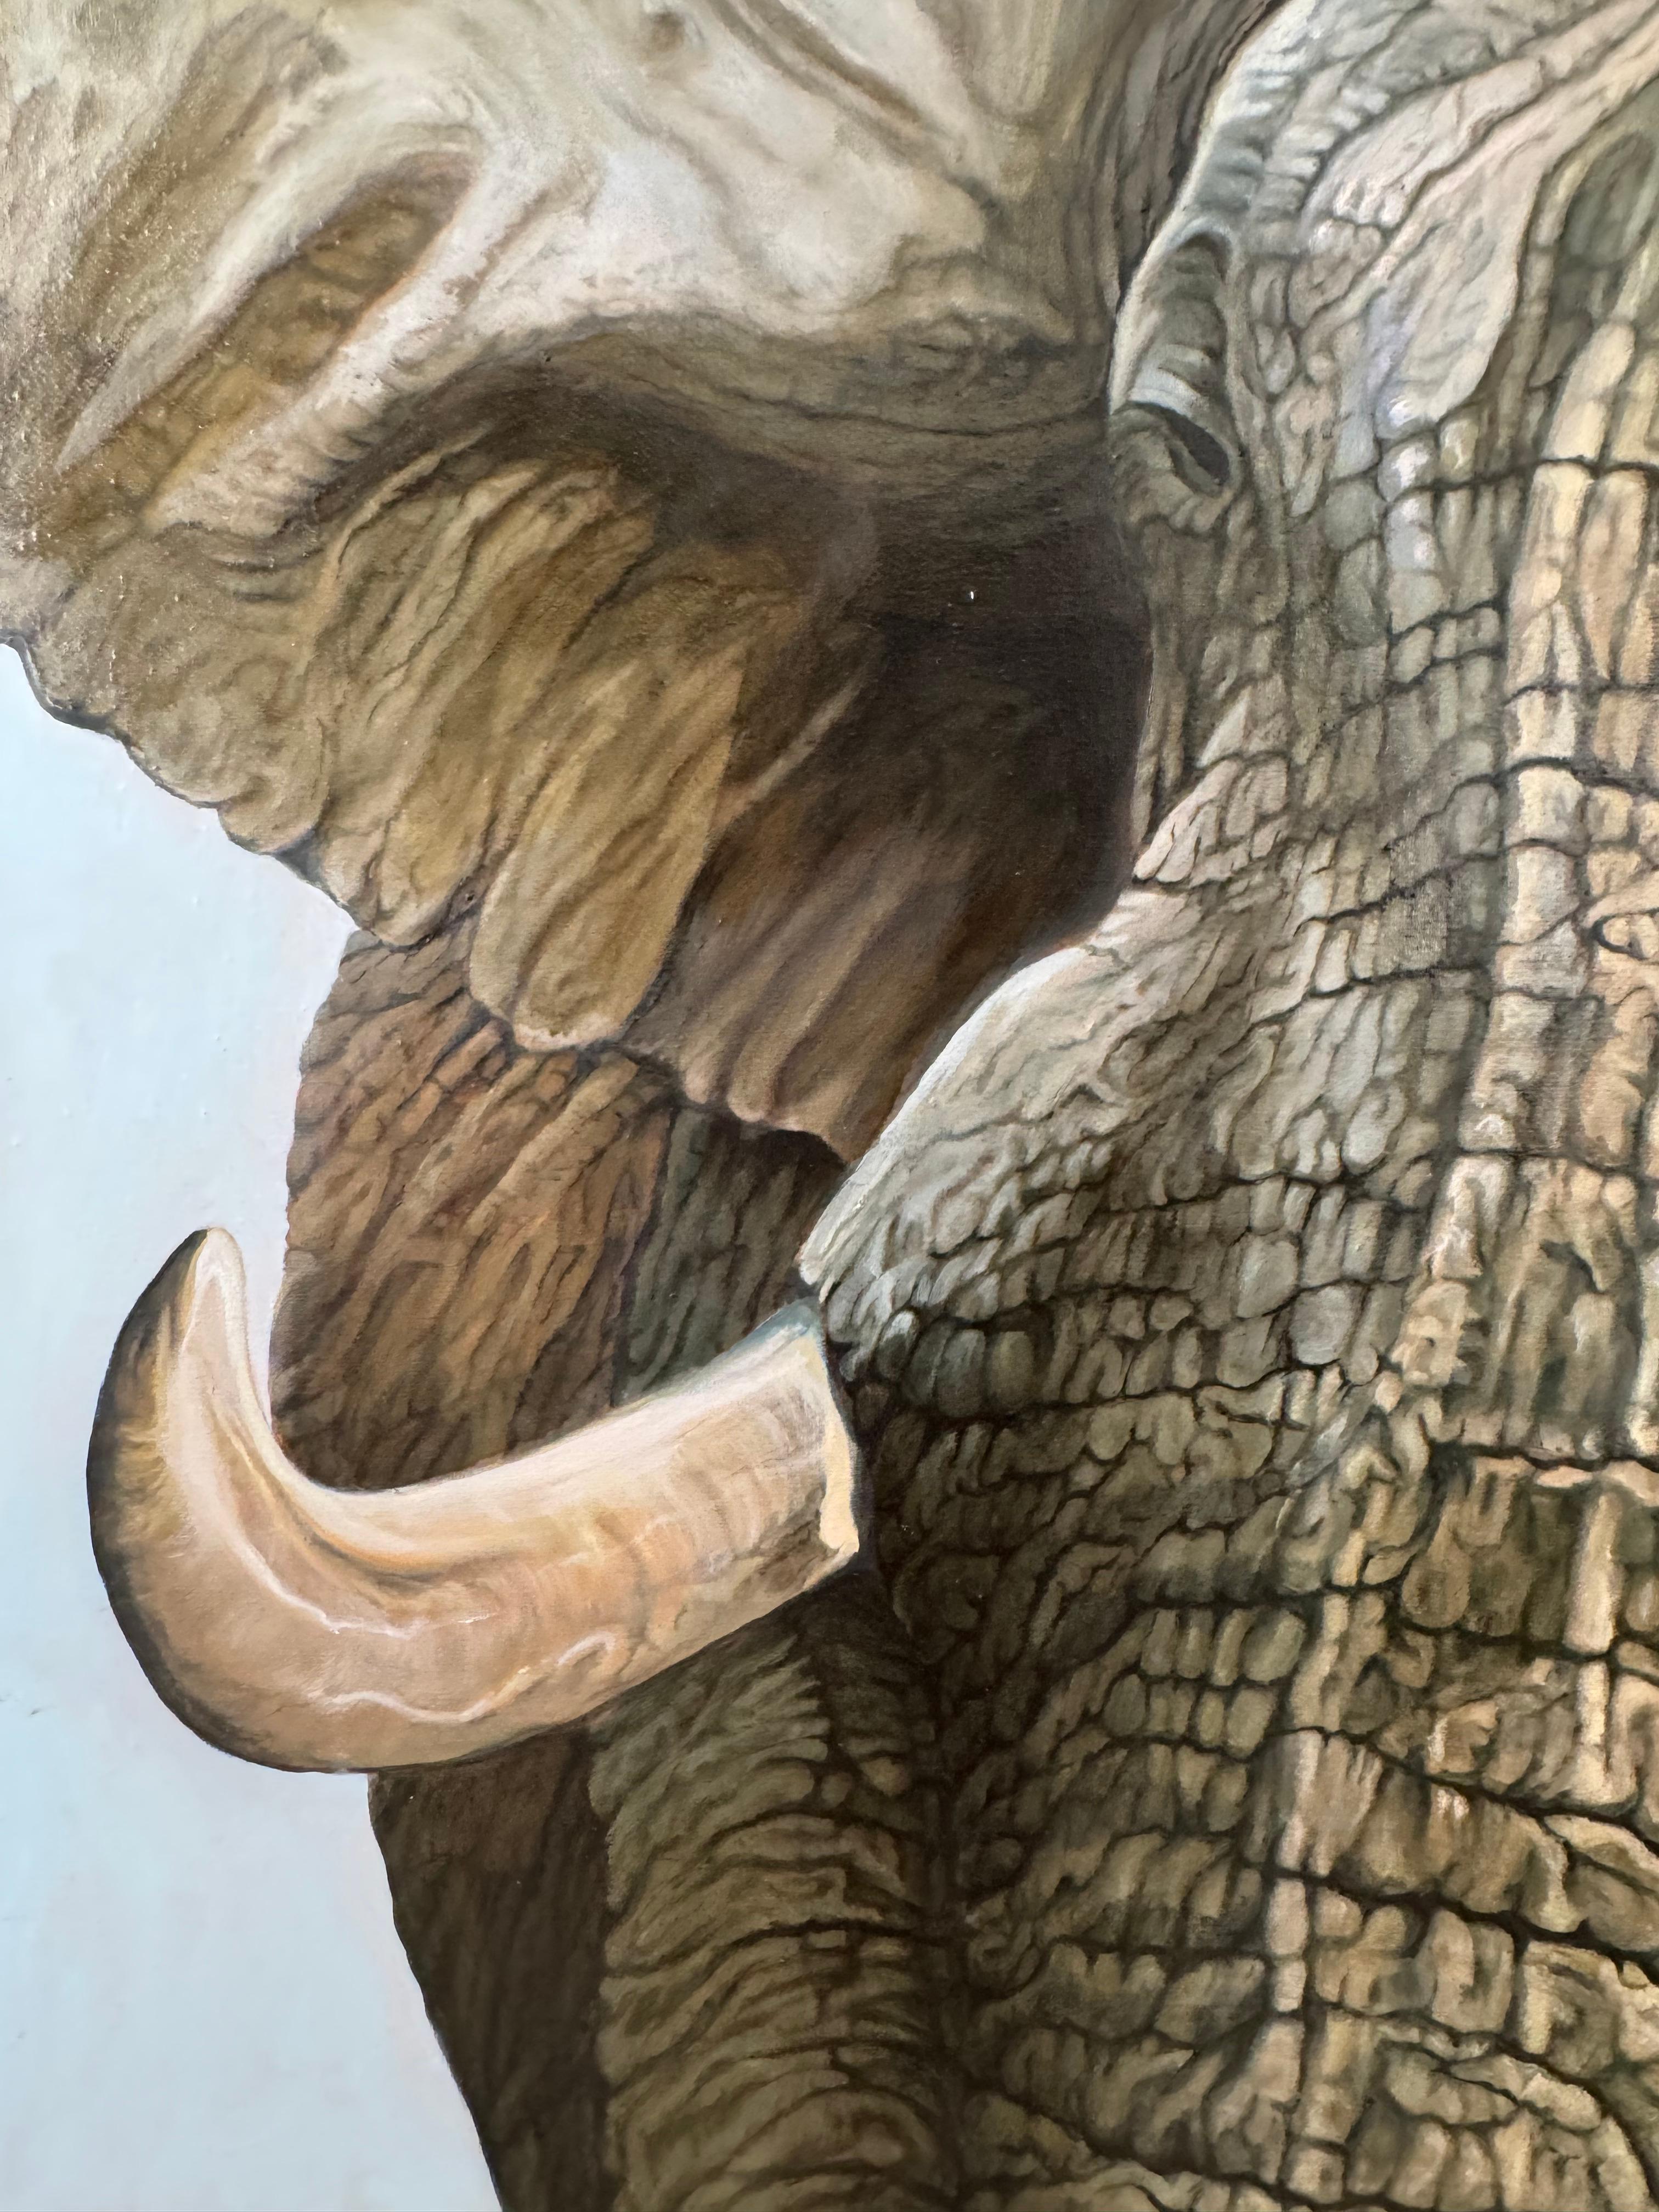 Portrait d'un éléphant